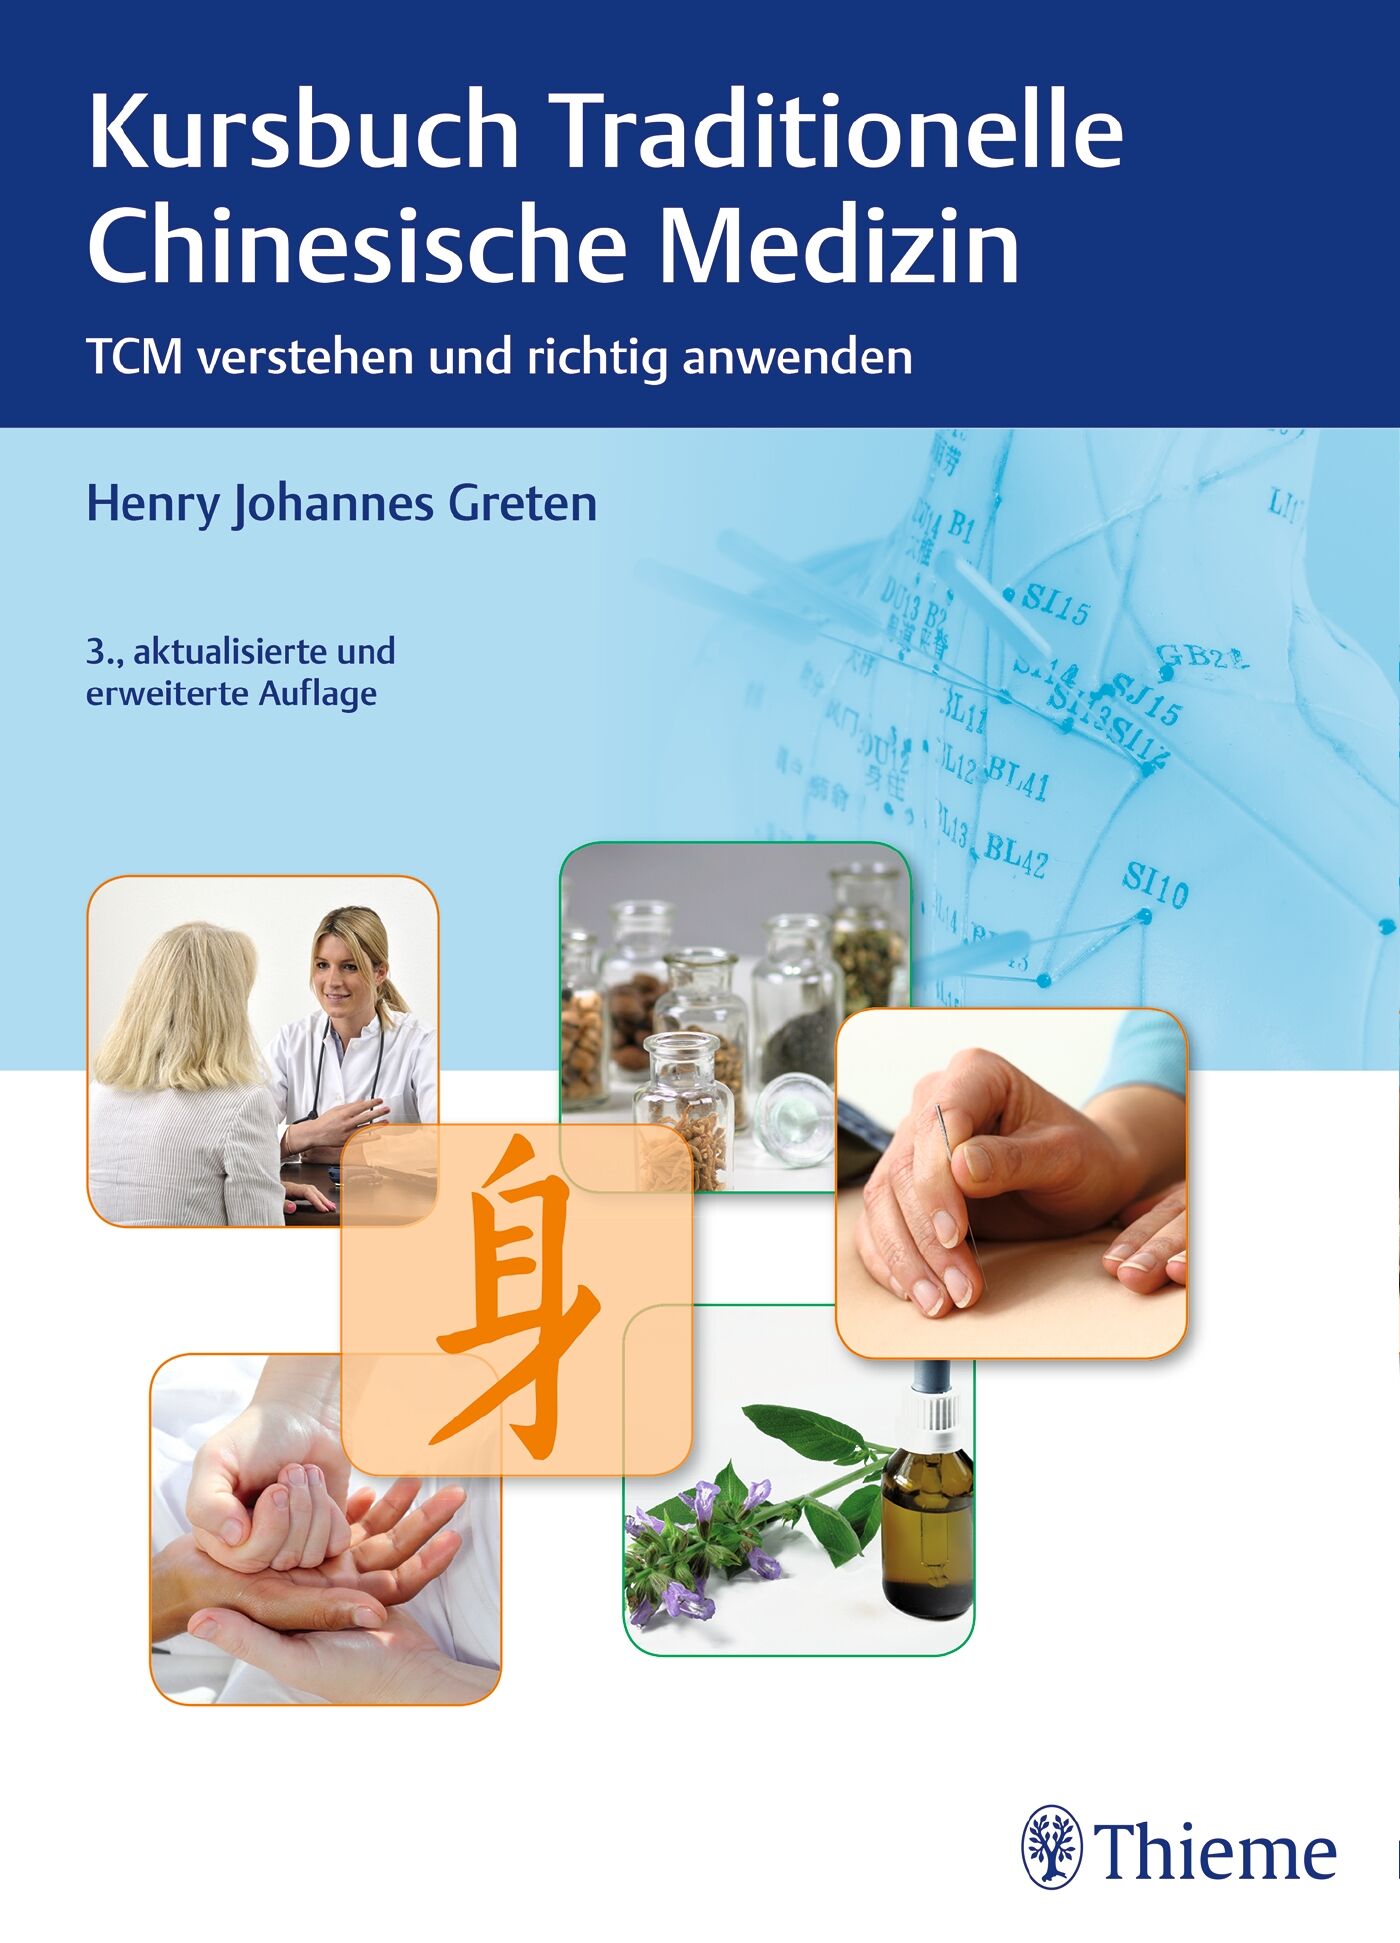 Kursbuch Traditionelle Chinesische Medizin, 9783131561138